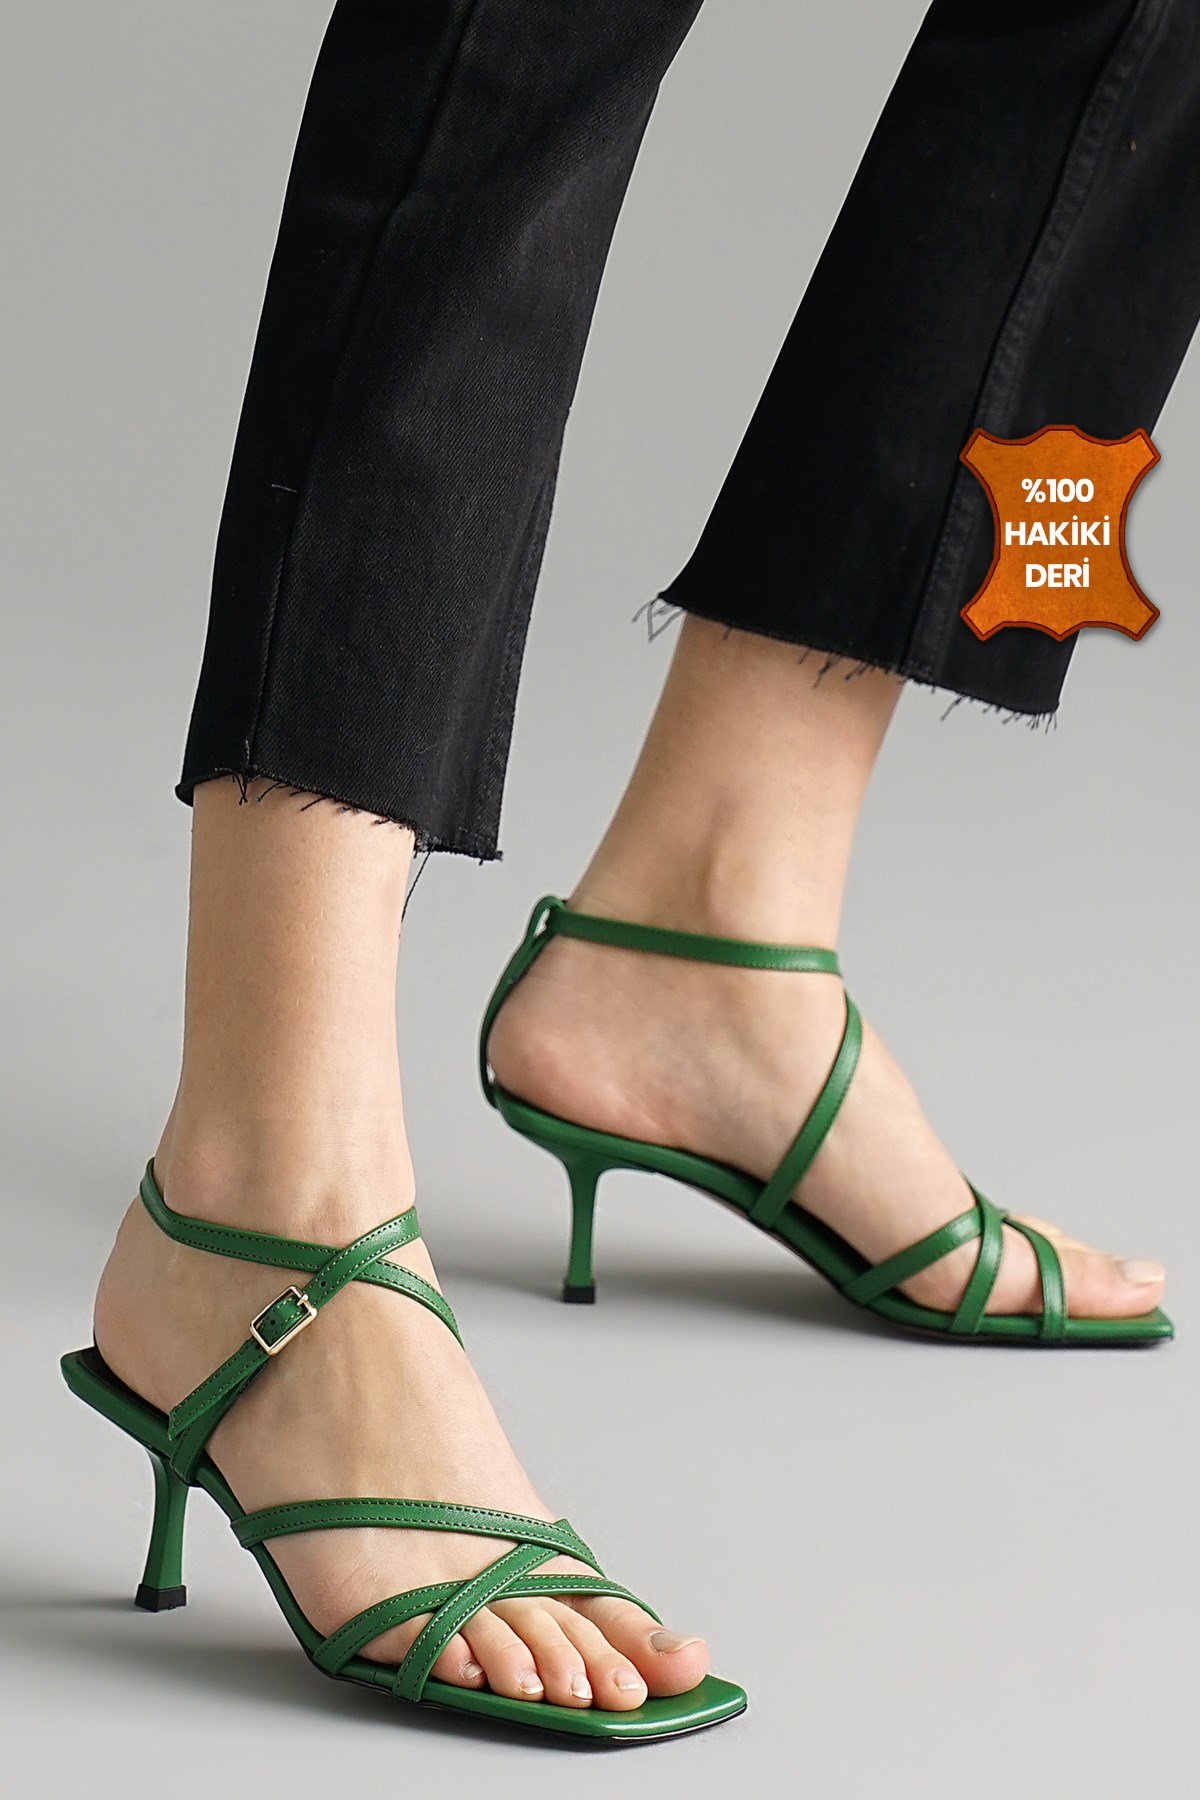 Mio Gusto Hakiki Deri Yeşil Renk Topuklu Sandalet